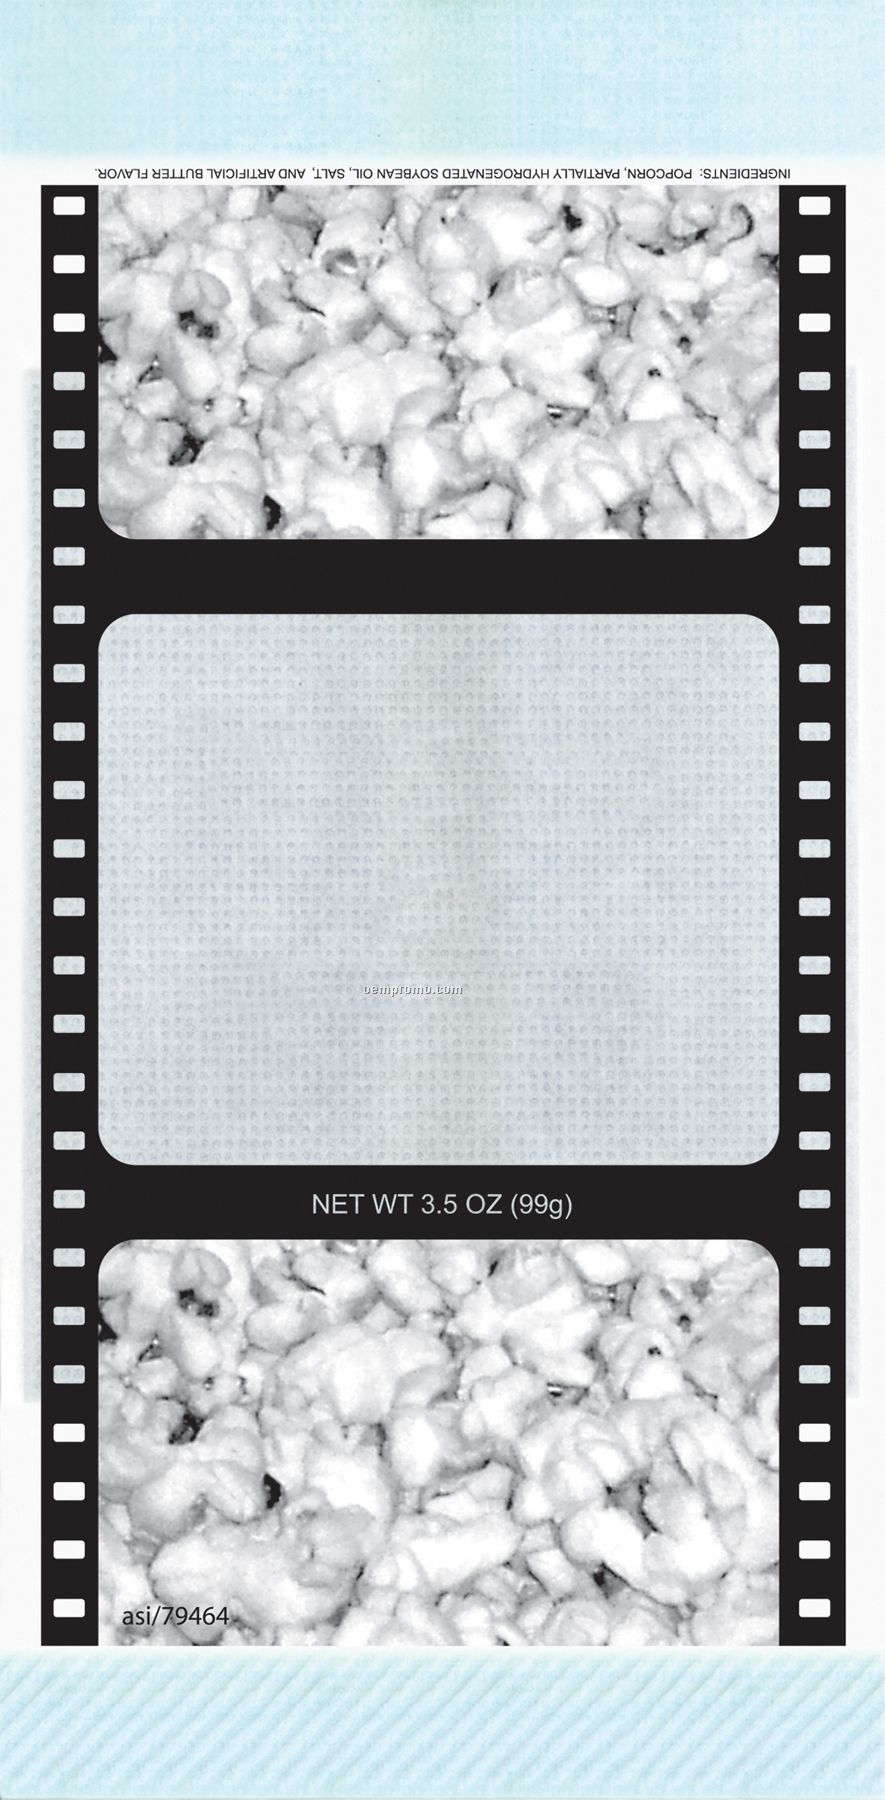 1 Color Pre-designed Microwave Popcorn Bag (Popcorn/Movie Reel)